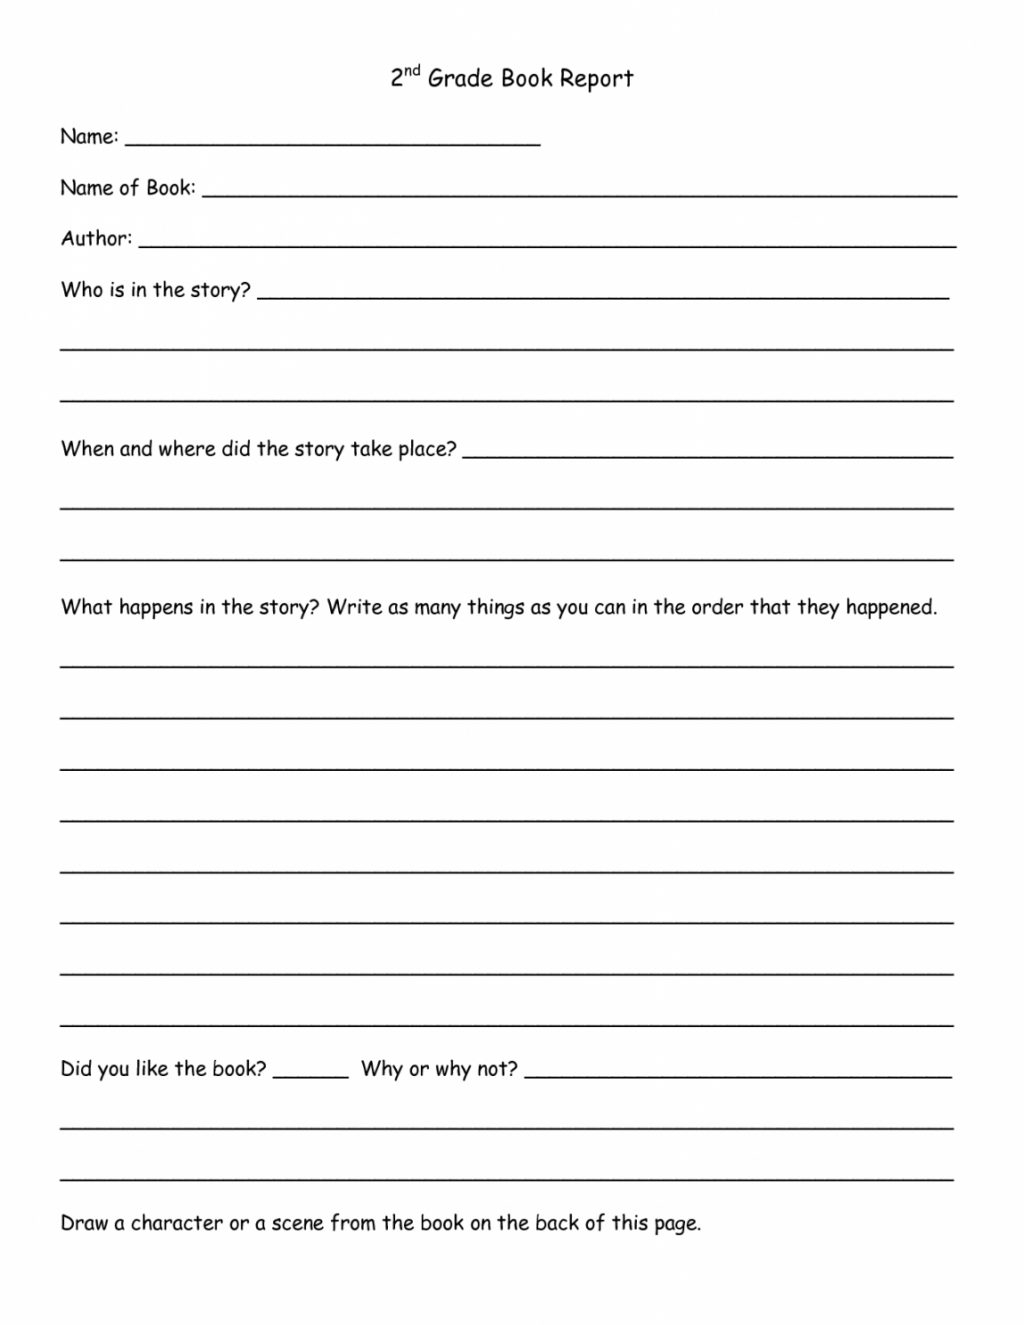 Worksheet Ideas ~ Book Report Template 1St Grade Kola With Regard To Book Report Template 3Rd Grade